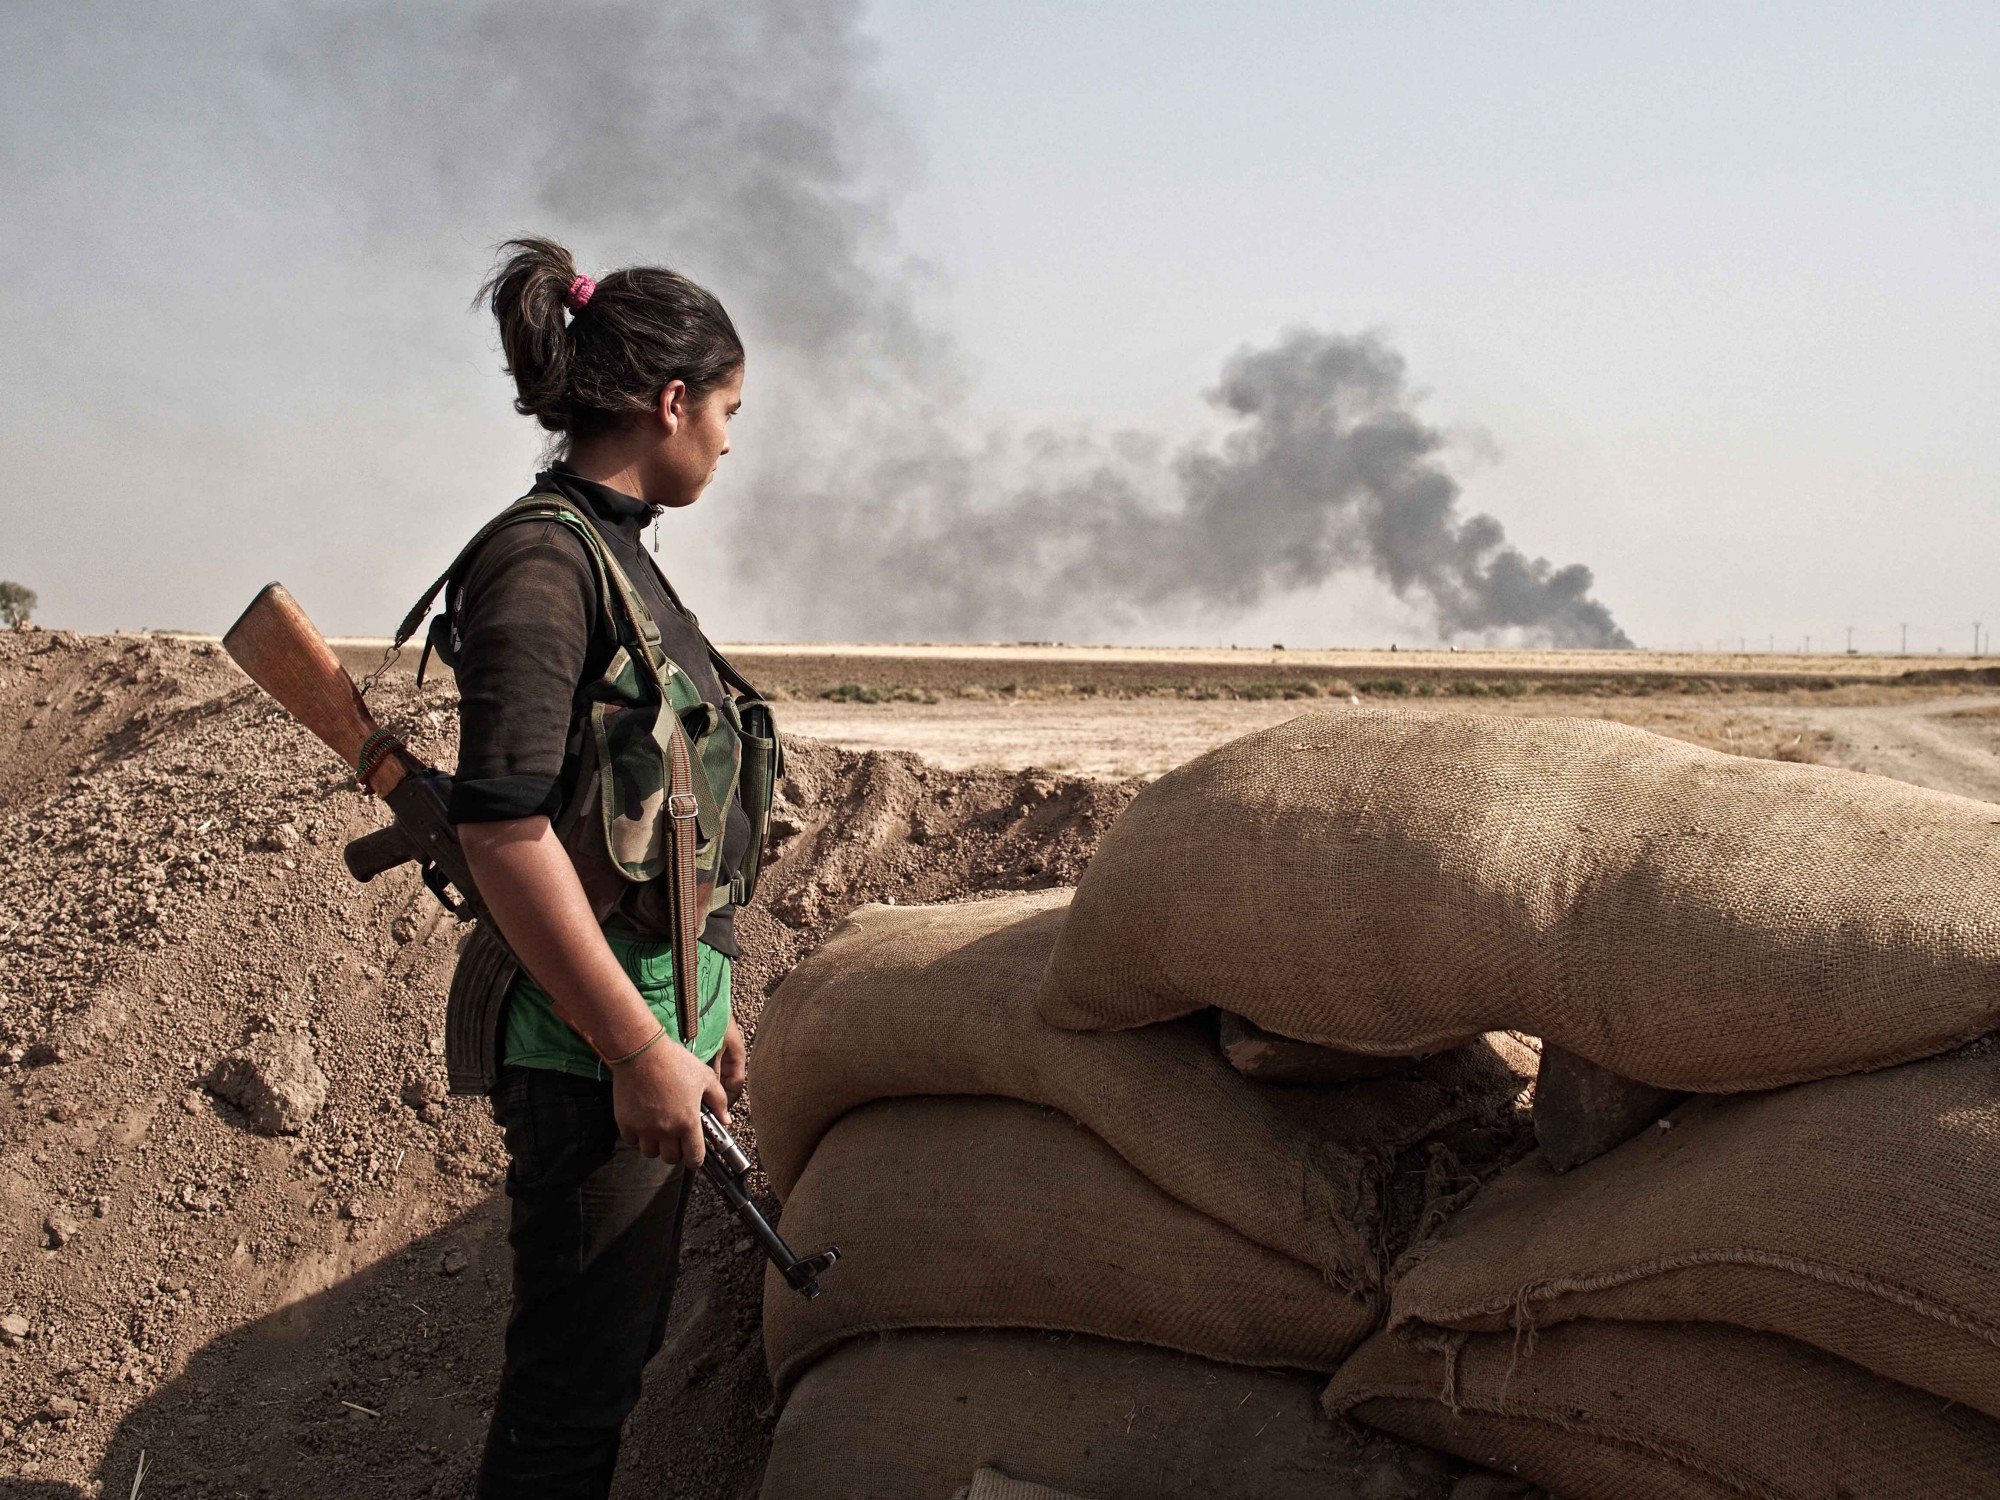 Kurd katonanő Szíriában 2013. augusztus 29-én.